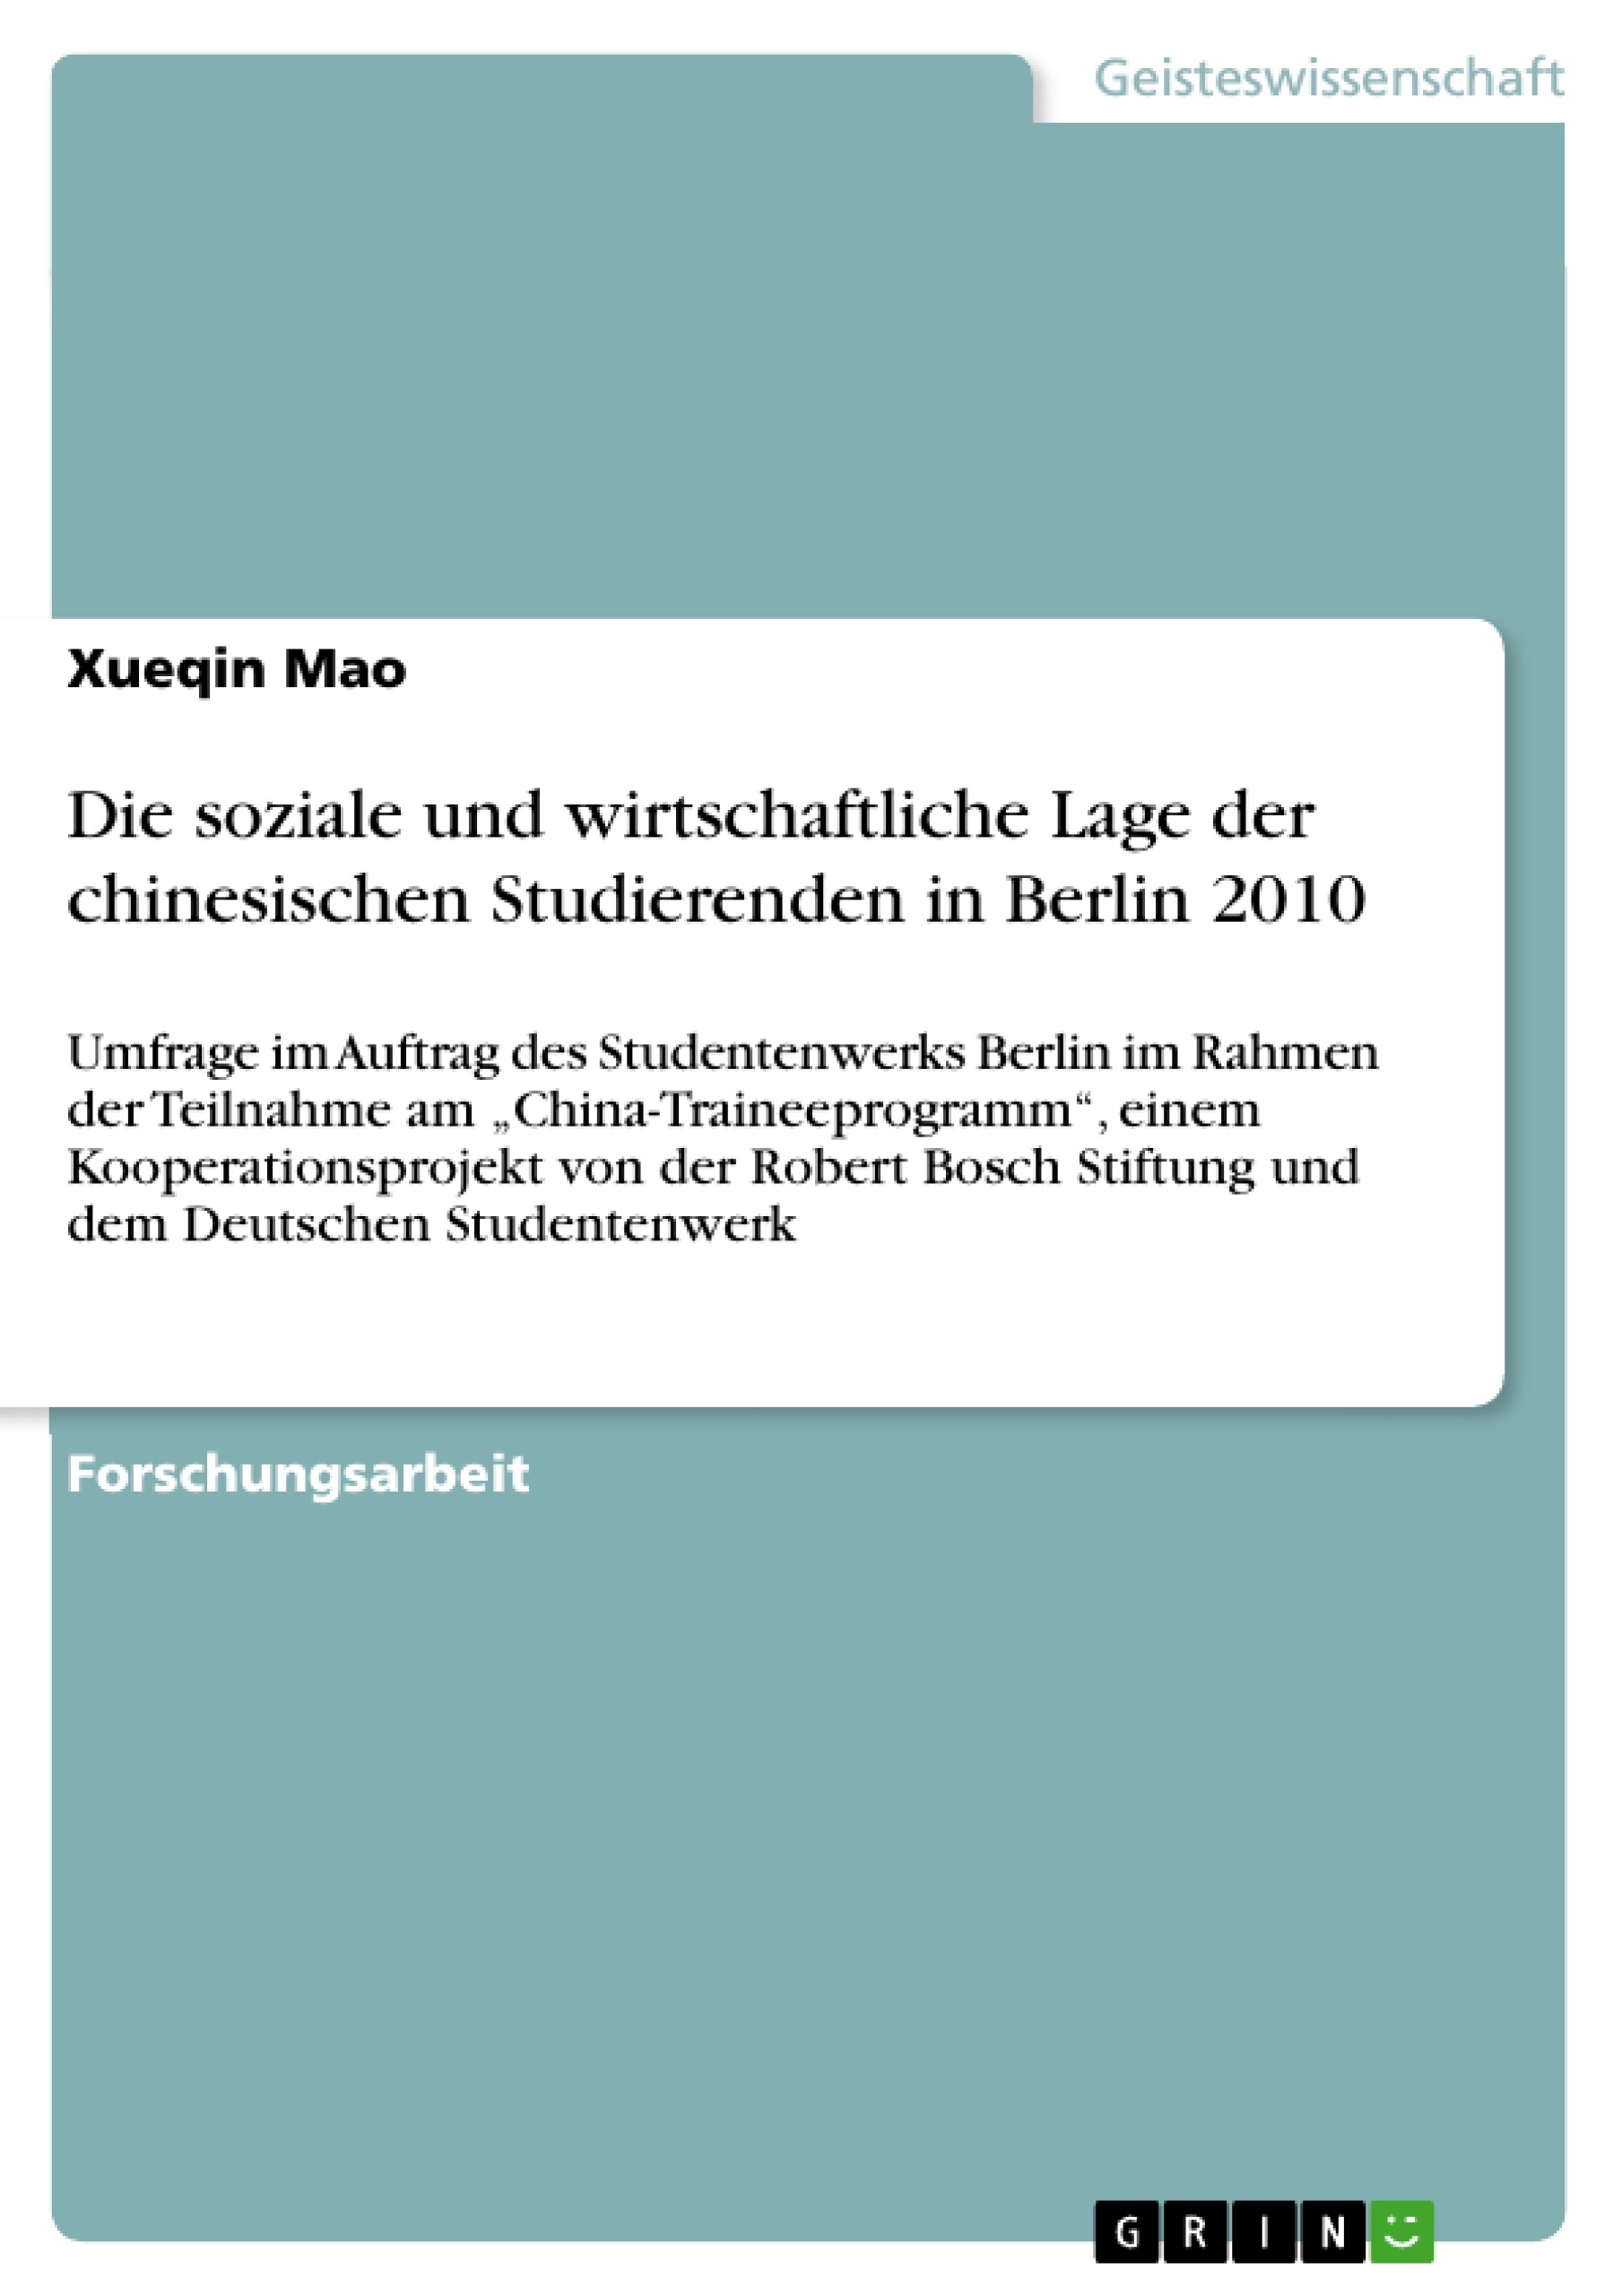 Title: Die soziale und wirtschaftliche Lage der chinesischen Studierenden in Berlin 2010